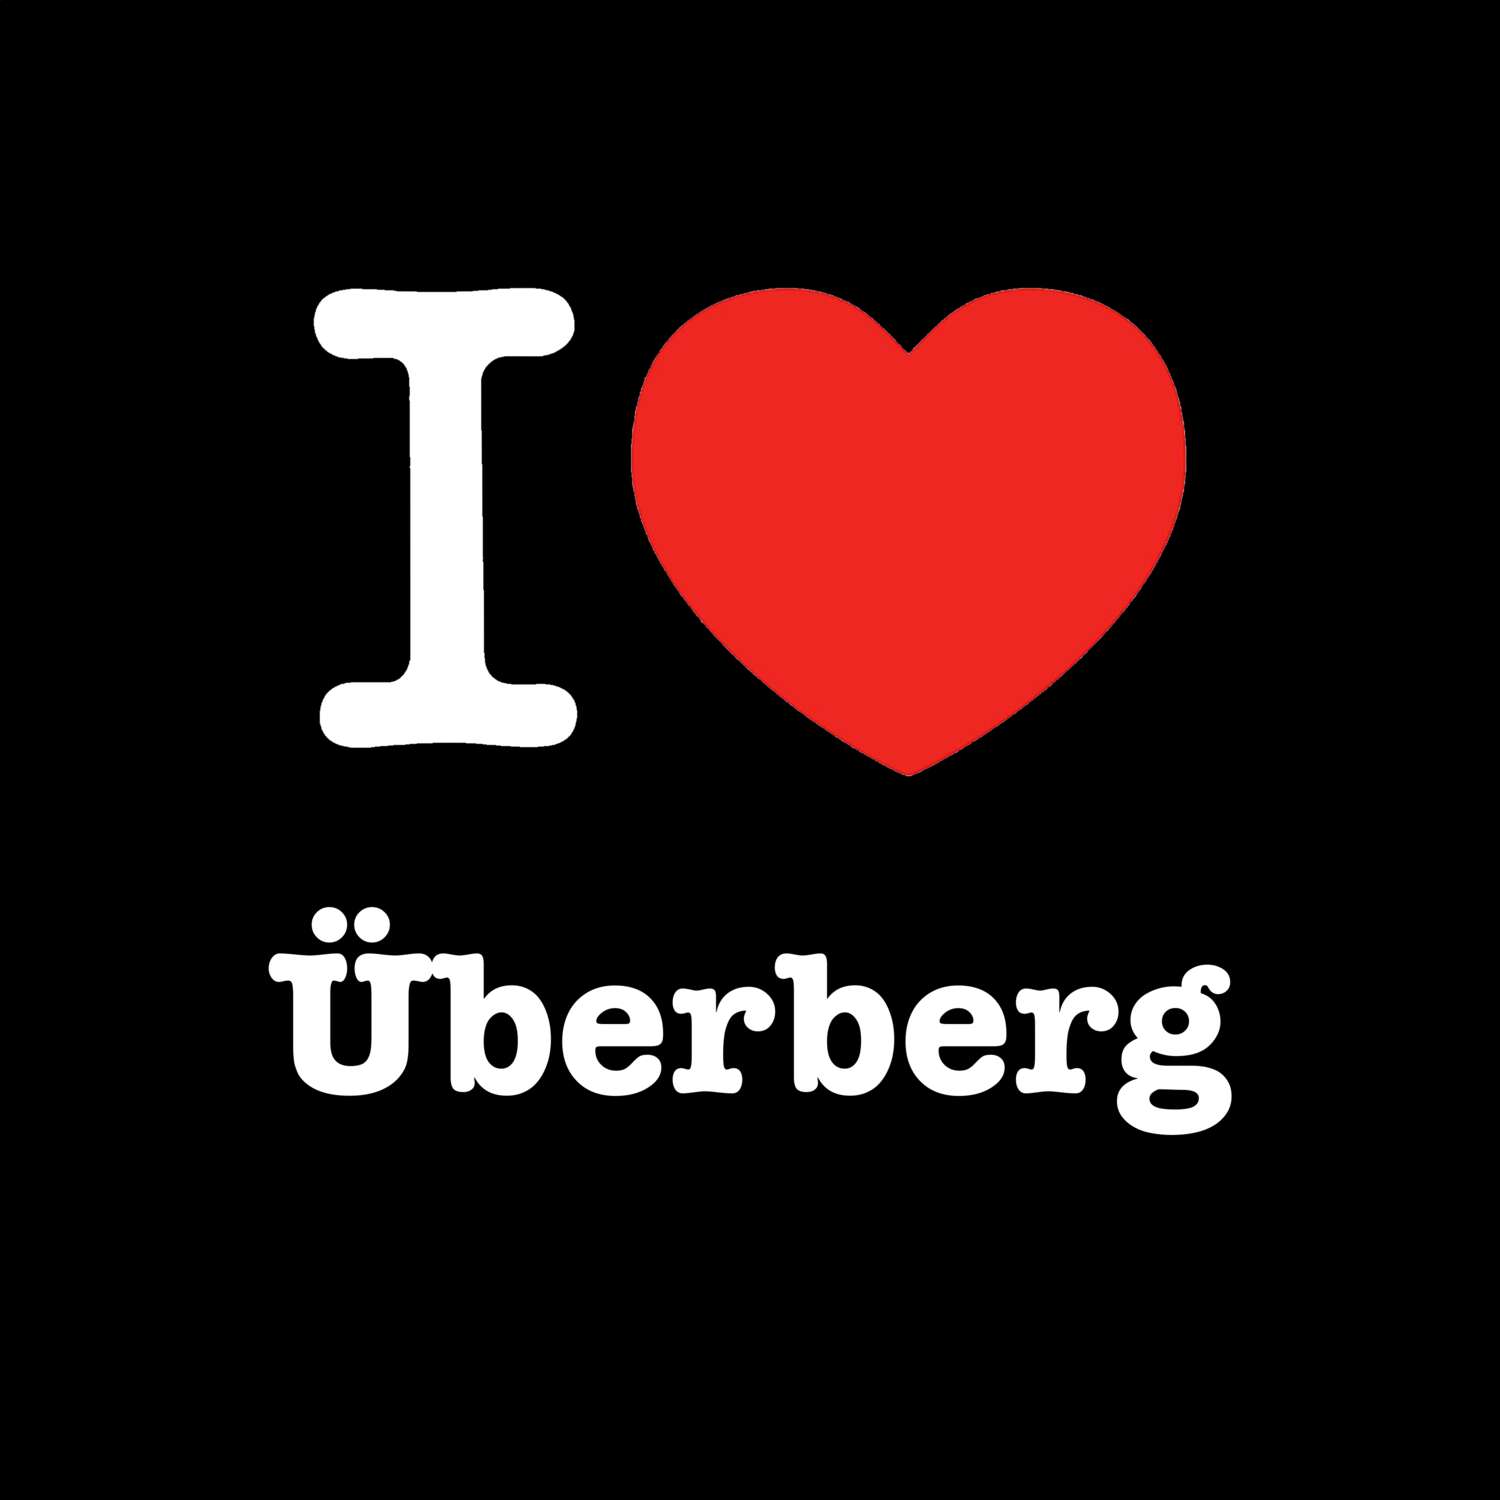 Überberg T-Shirt »I love«